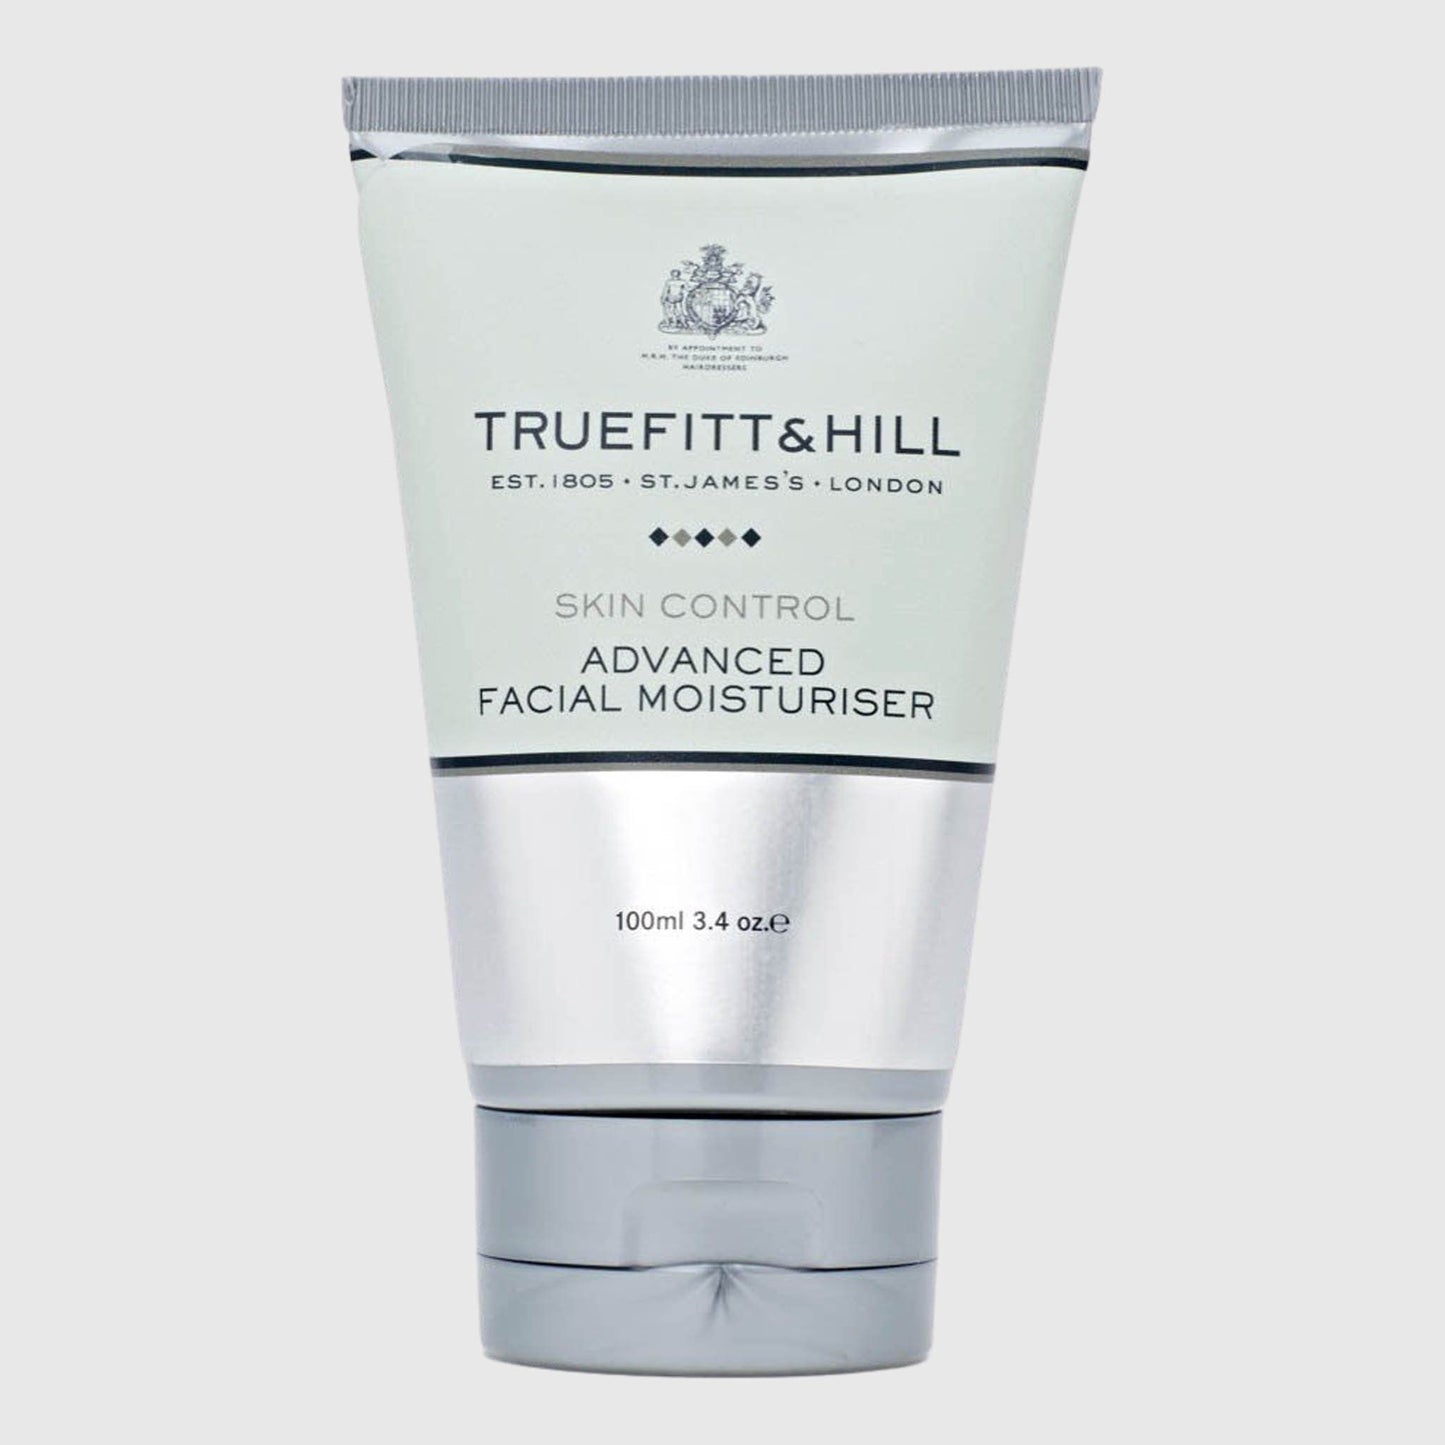 Truefitt & Hill Advanced Facial Moisturiser Skin Truefitt & Hill 